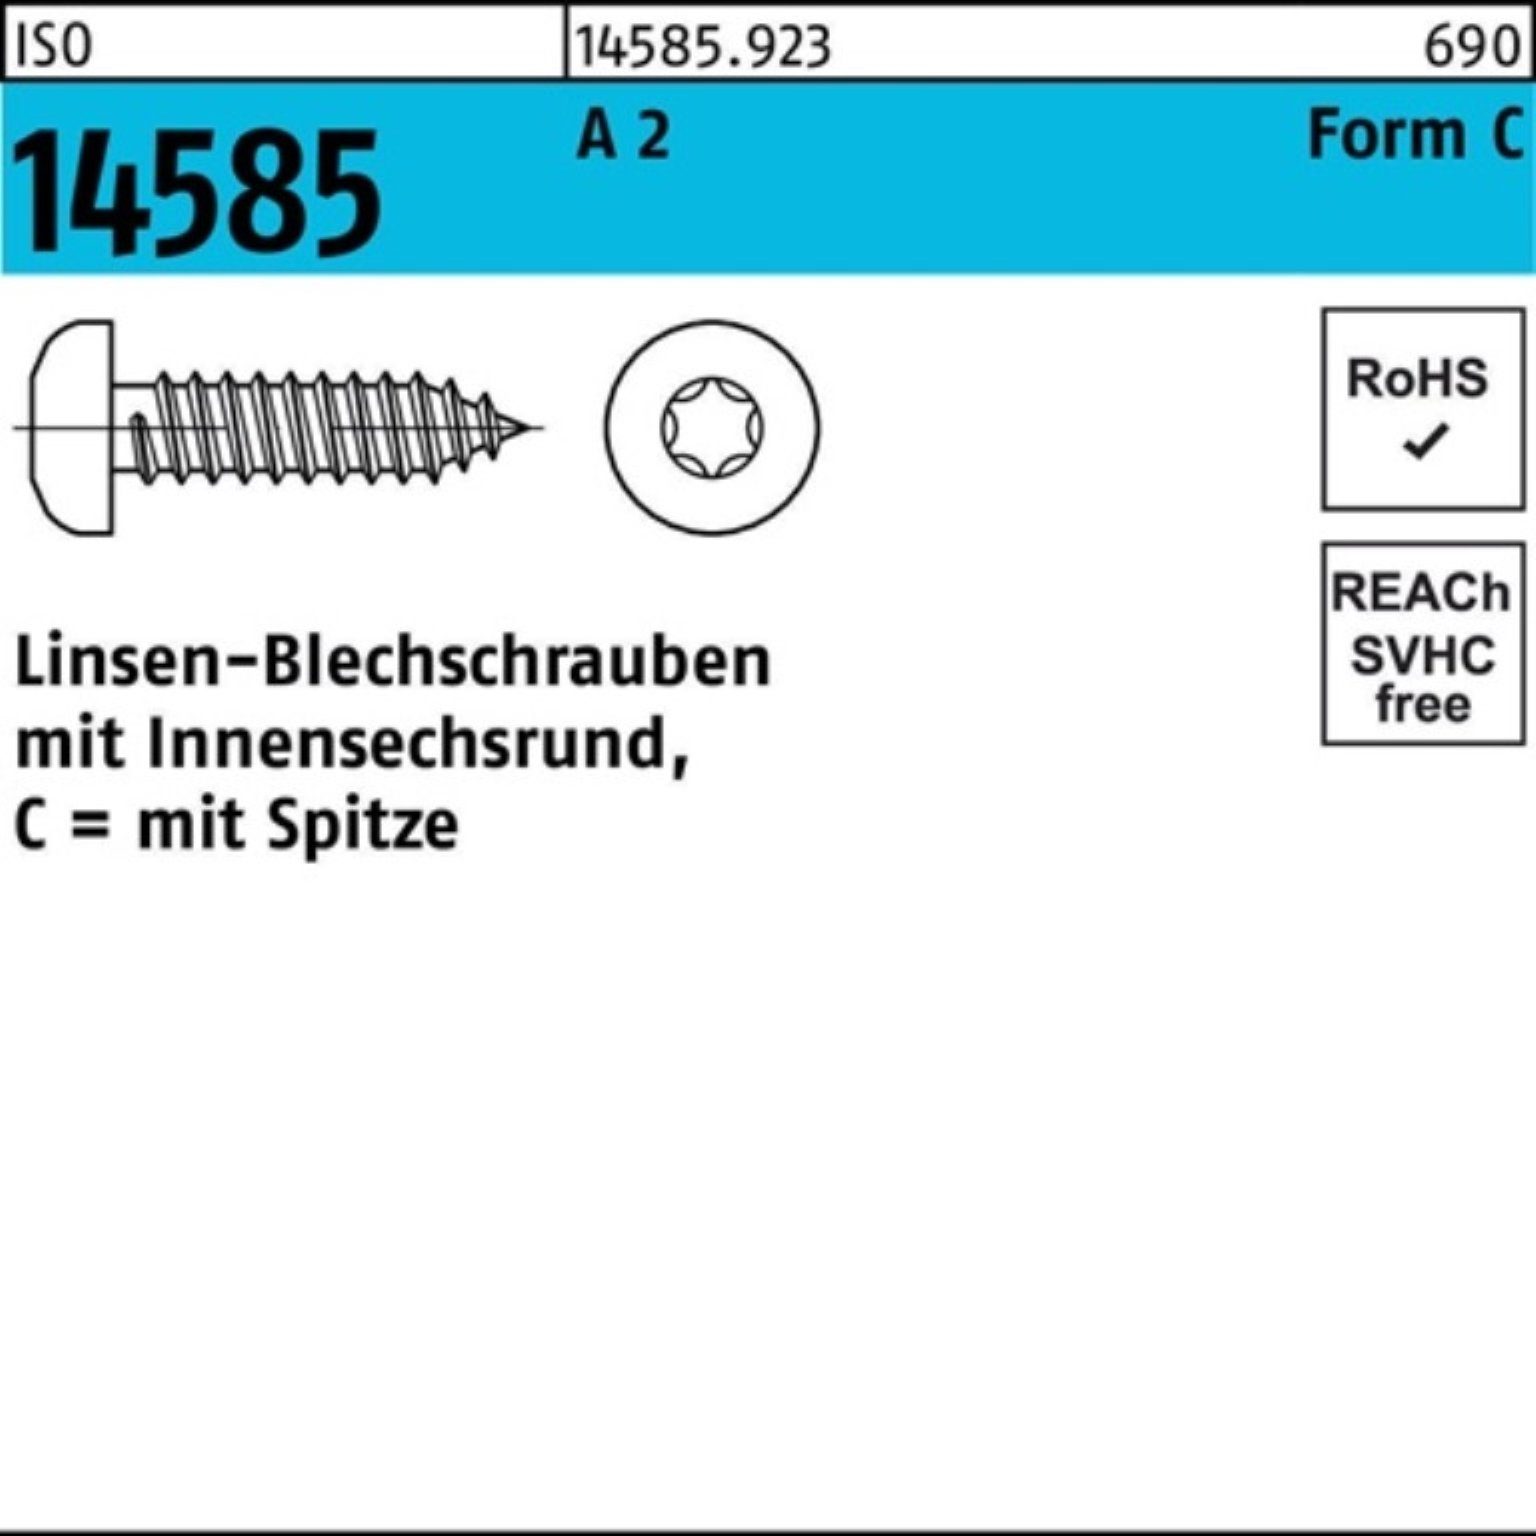 St 4,8x A Blechschraube 14585 80 ISR 250 2 -C ISO Linsenblechschraube T25 Pack 250er Reyher